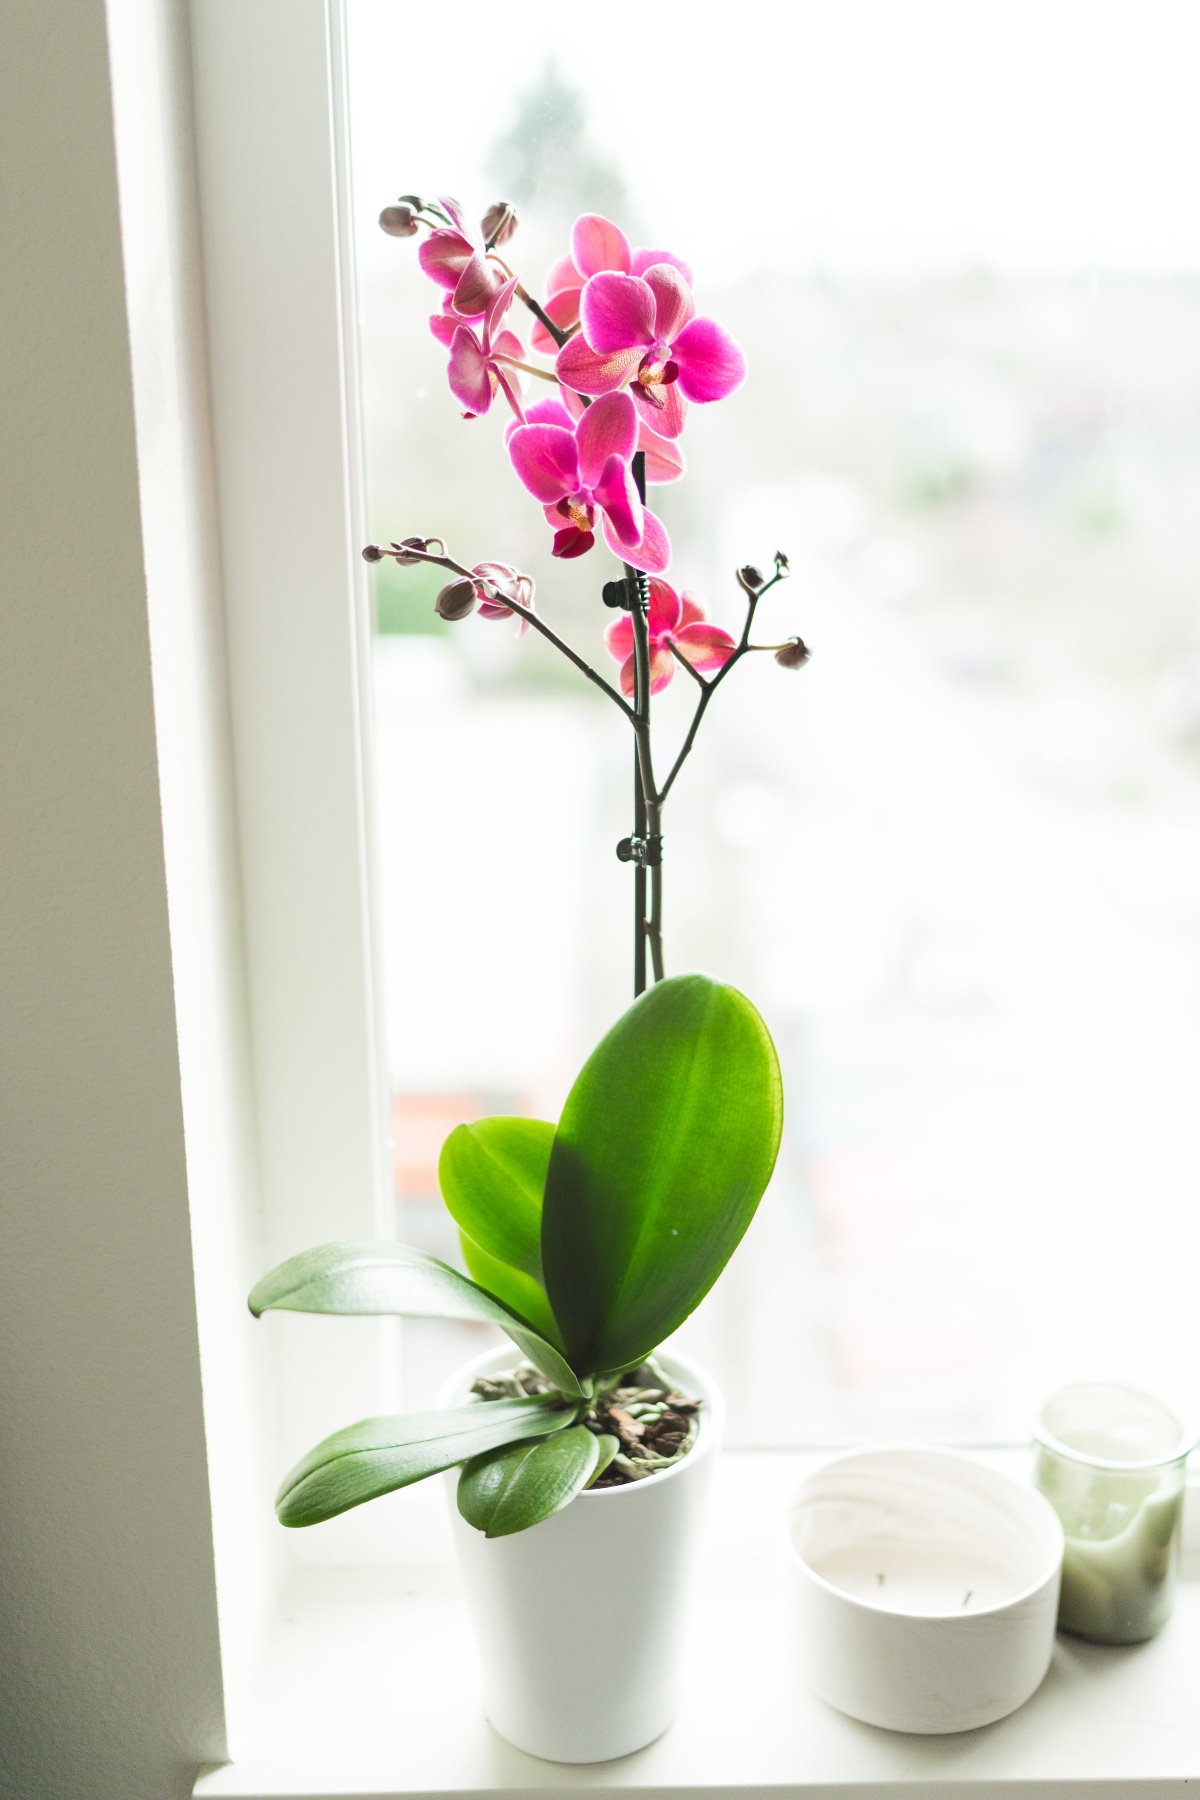 Purple Orchid on Window Sill